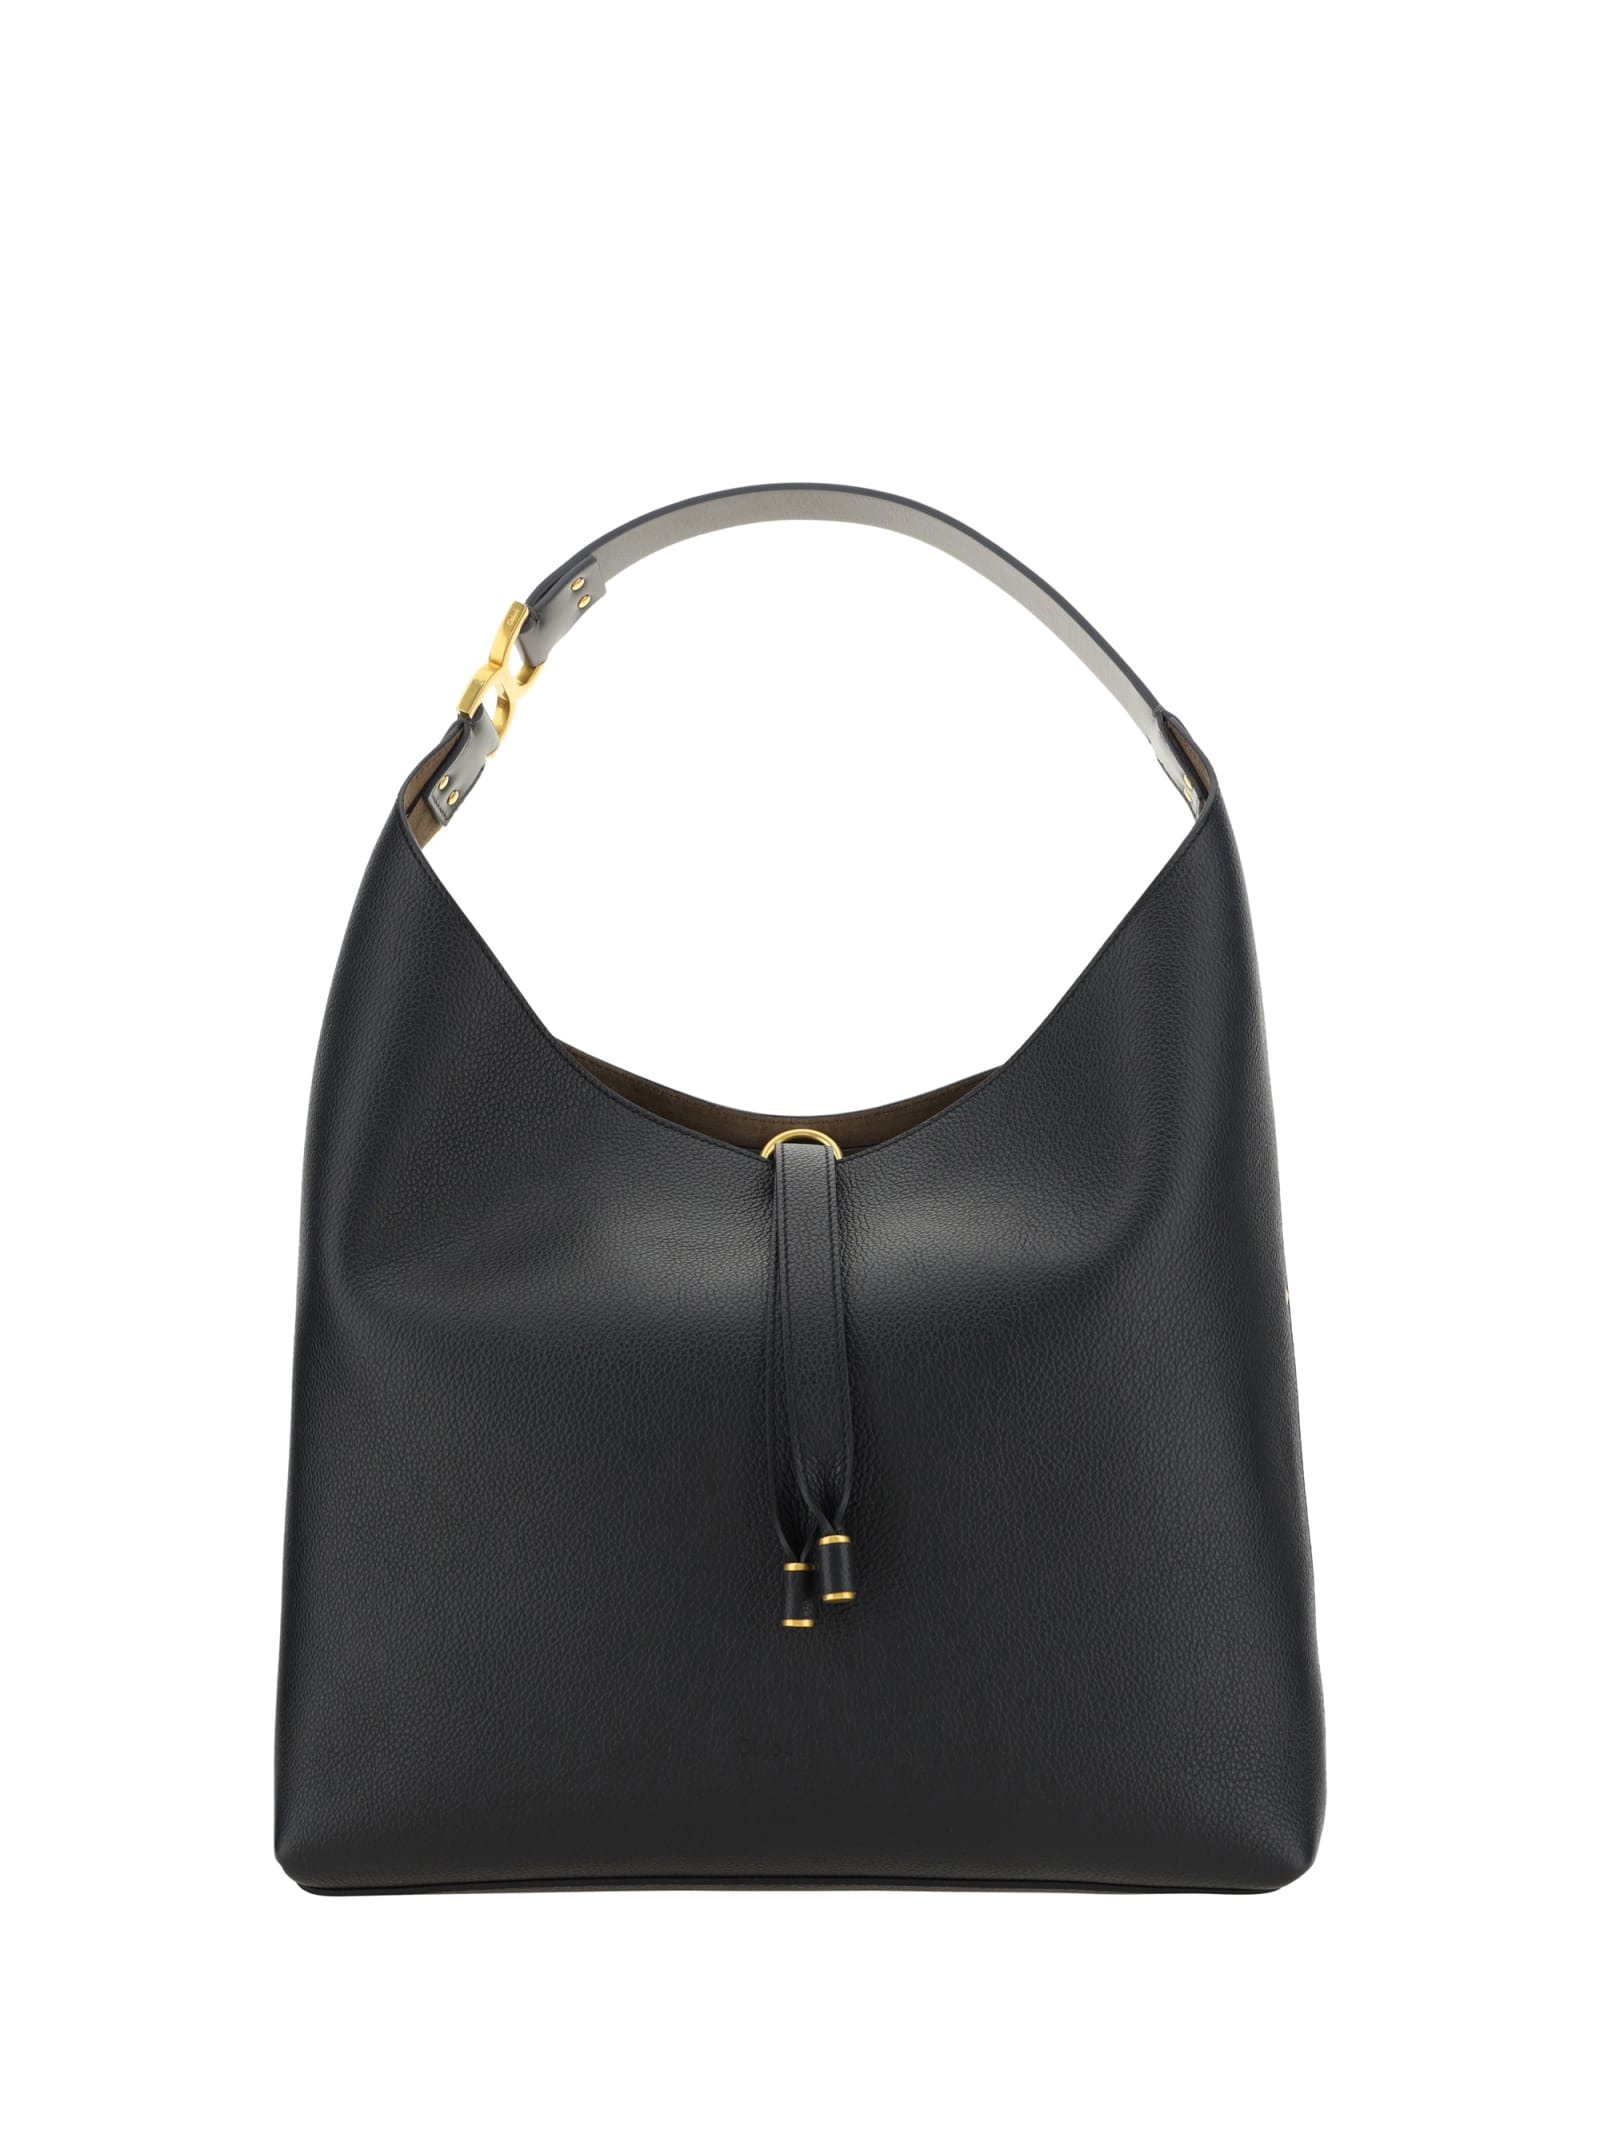 Chloé Marcie Shoulder Bag In Black